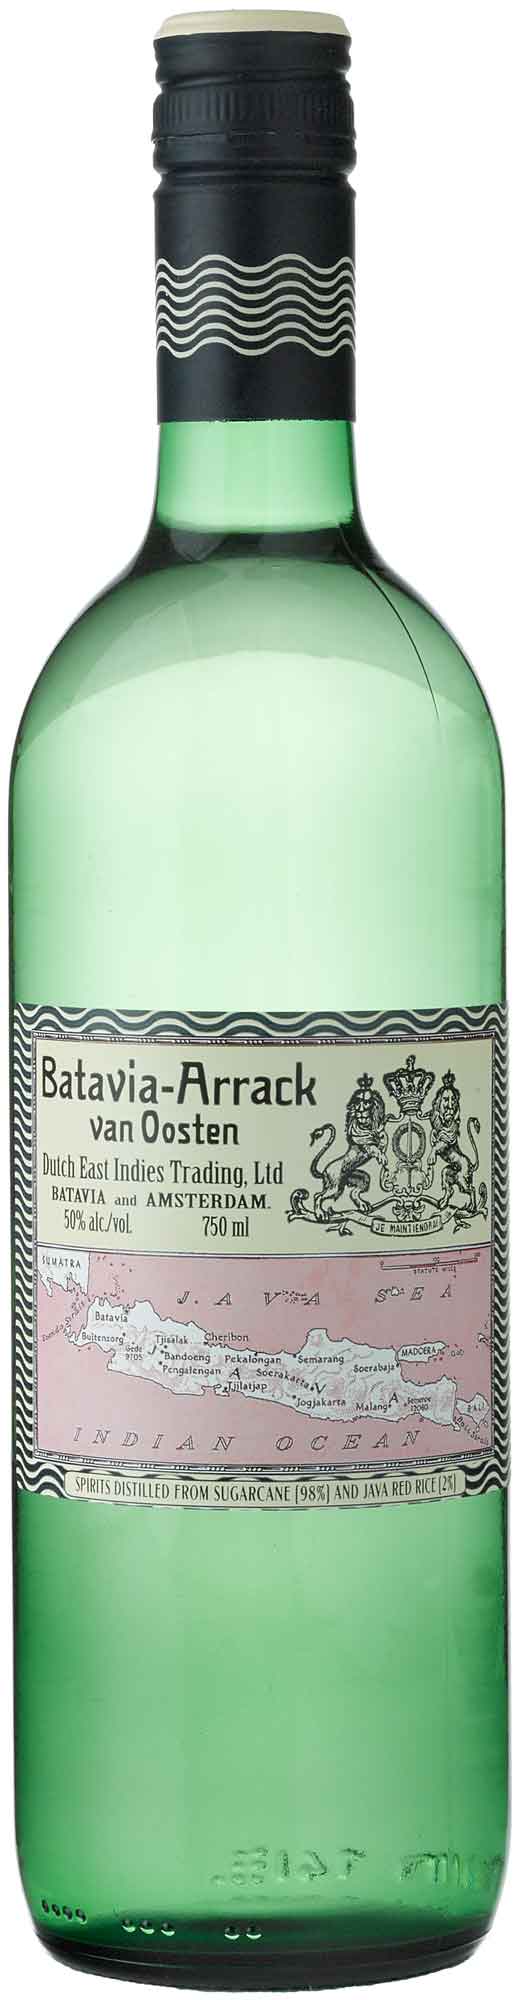 Batavia - Arrack Van Oosten (750ml) (750ml)